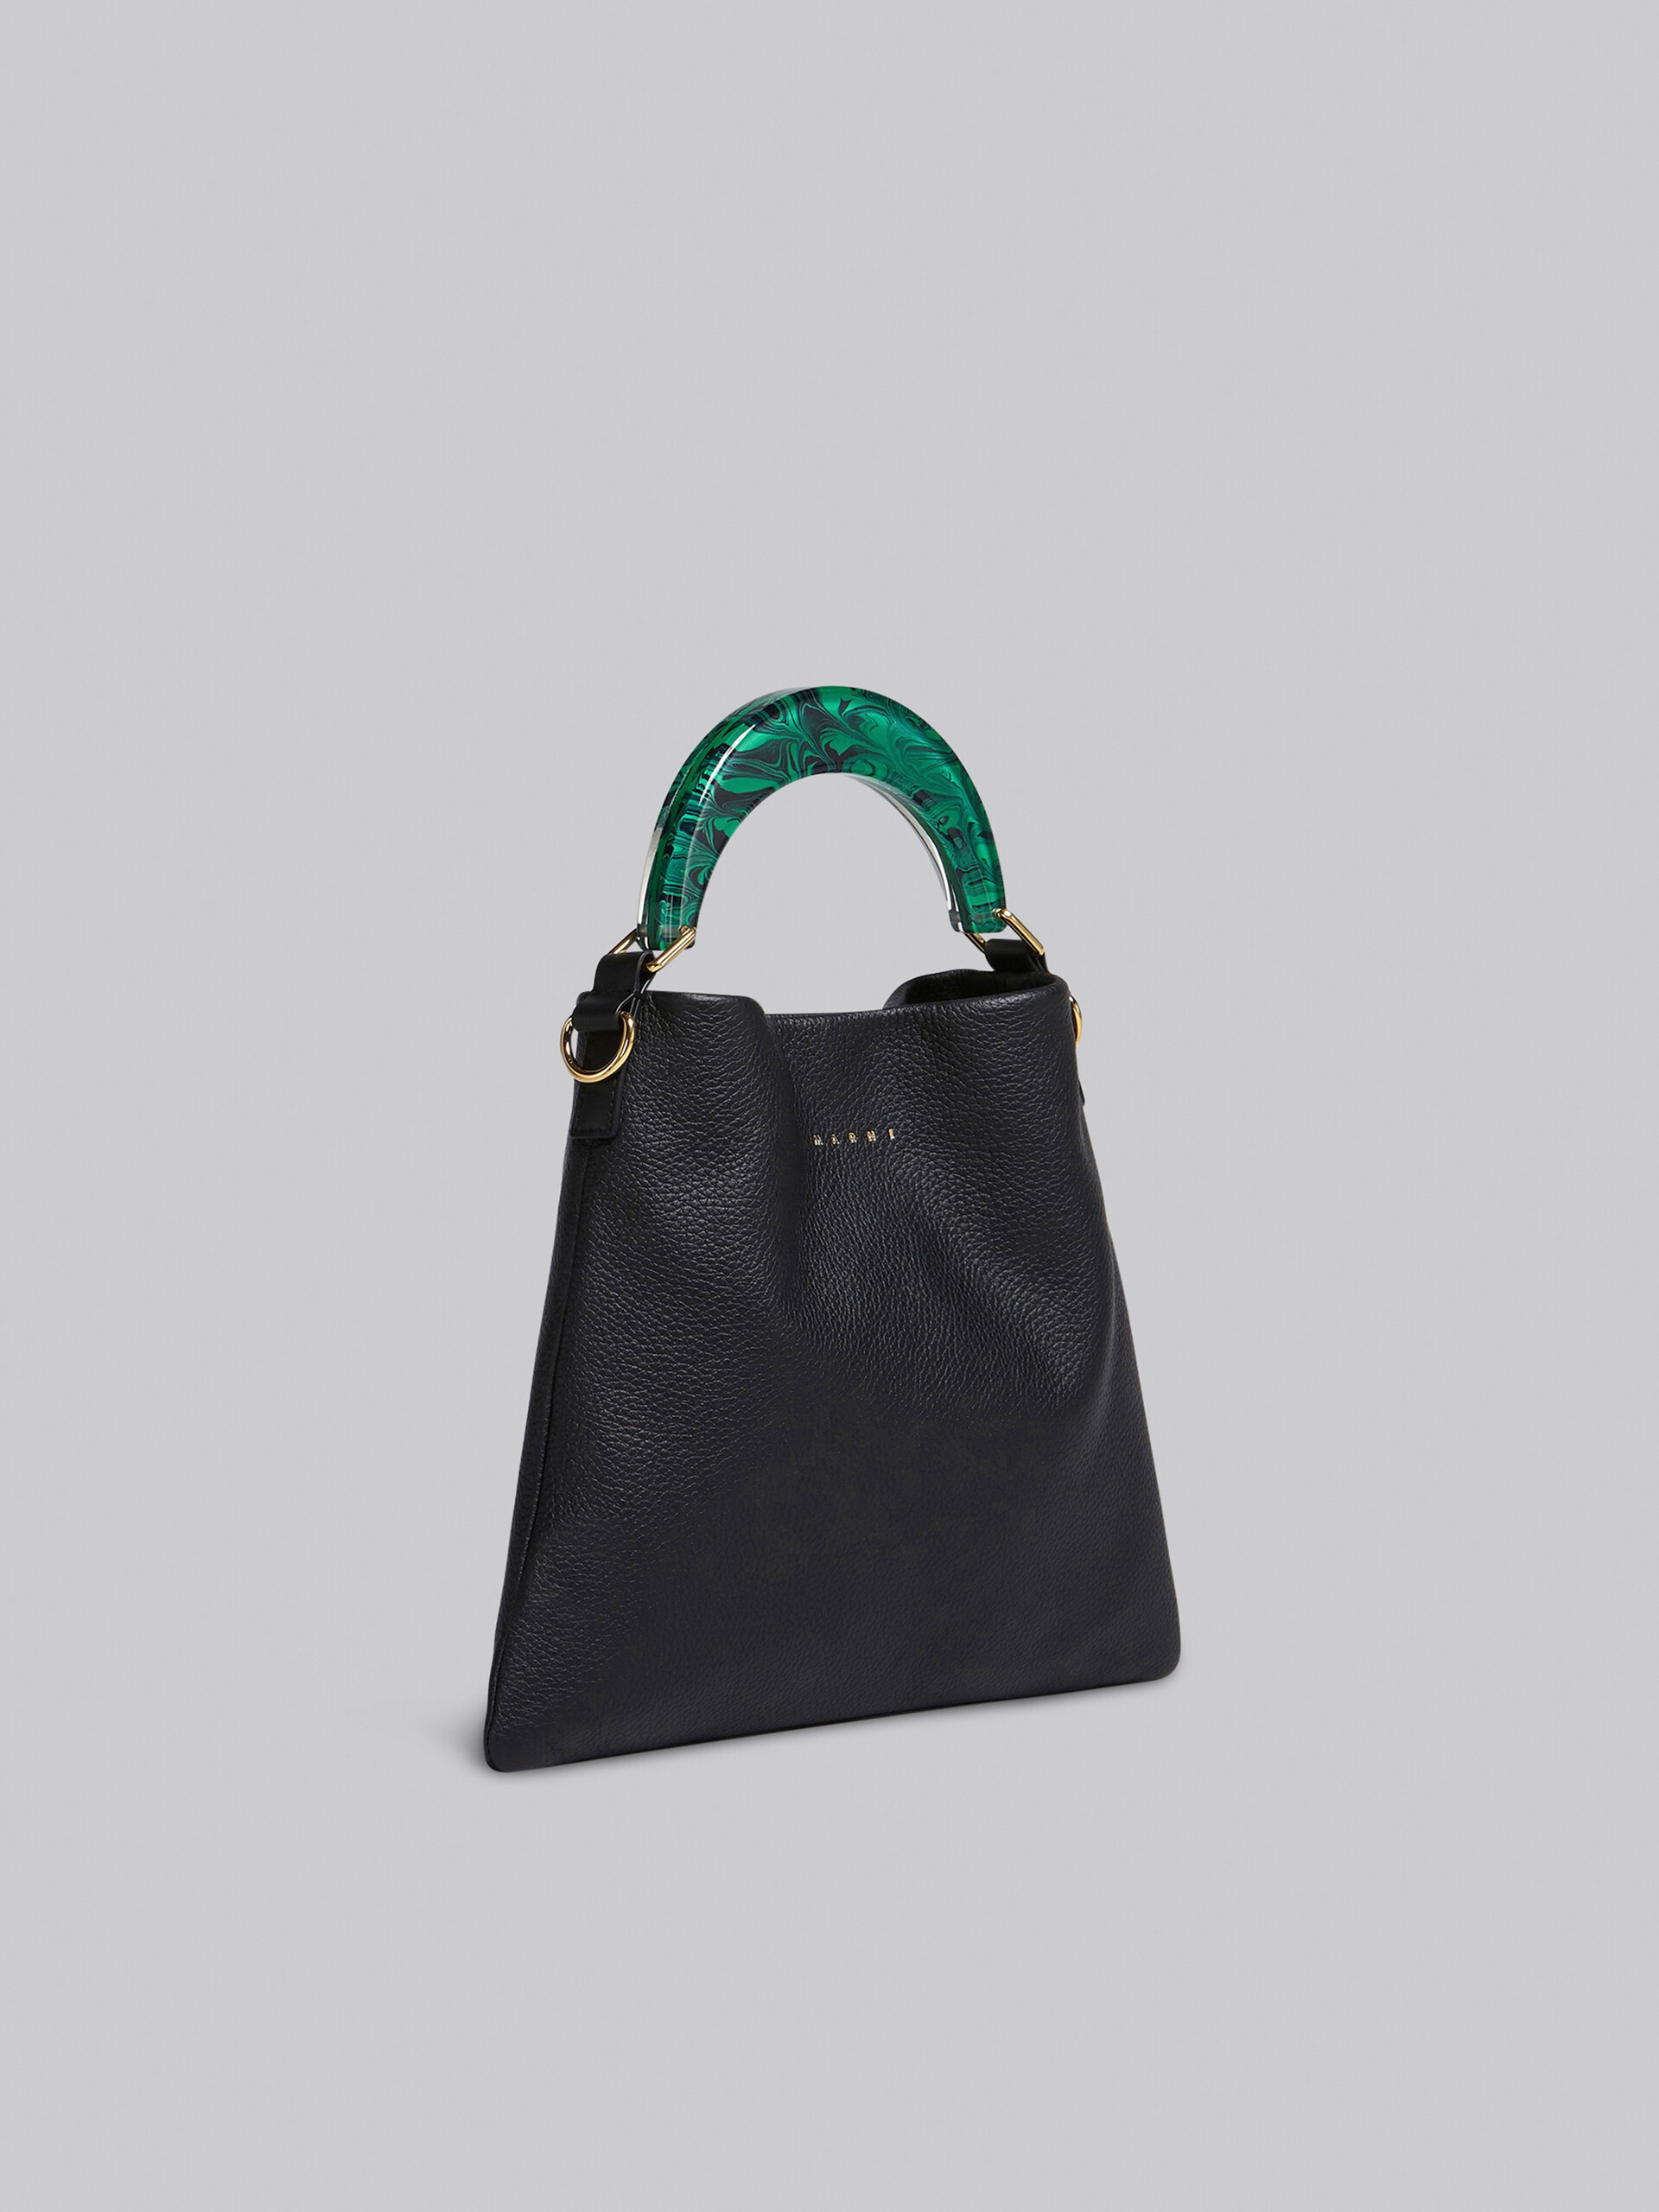 Venice small bag in black leather - Shoulder Bag - Image 6